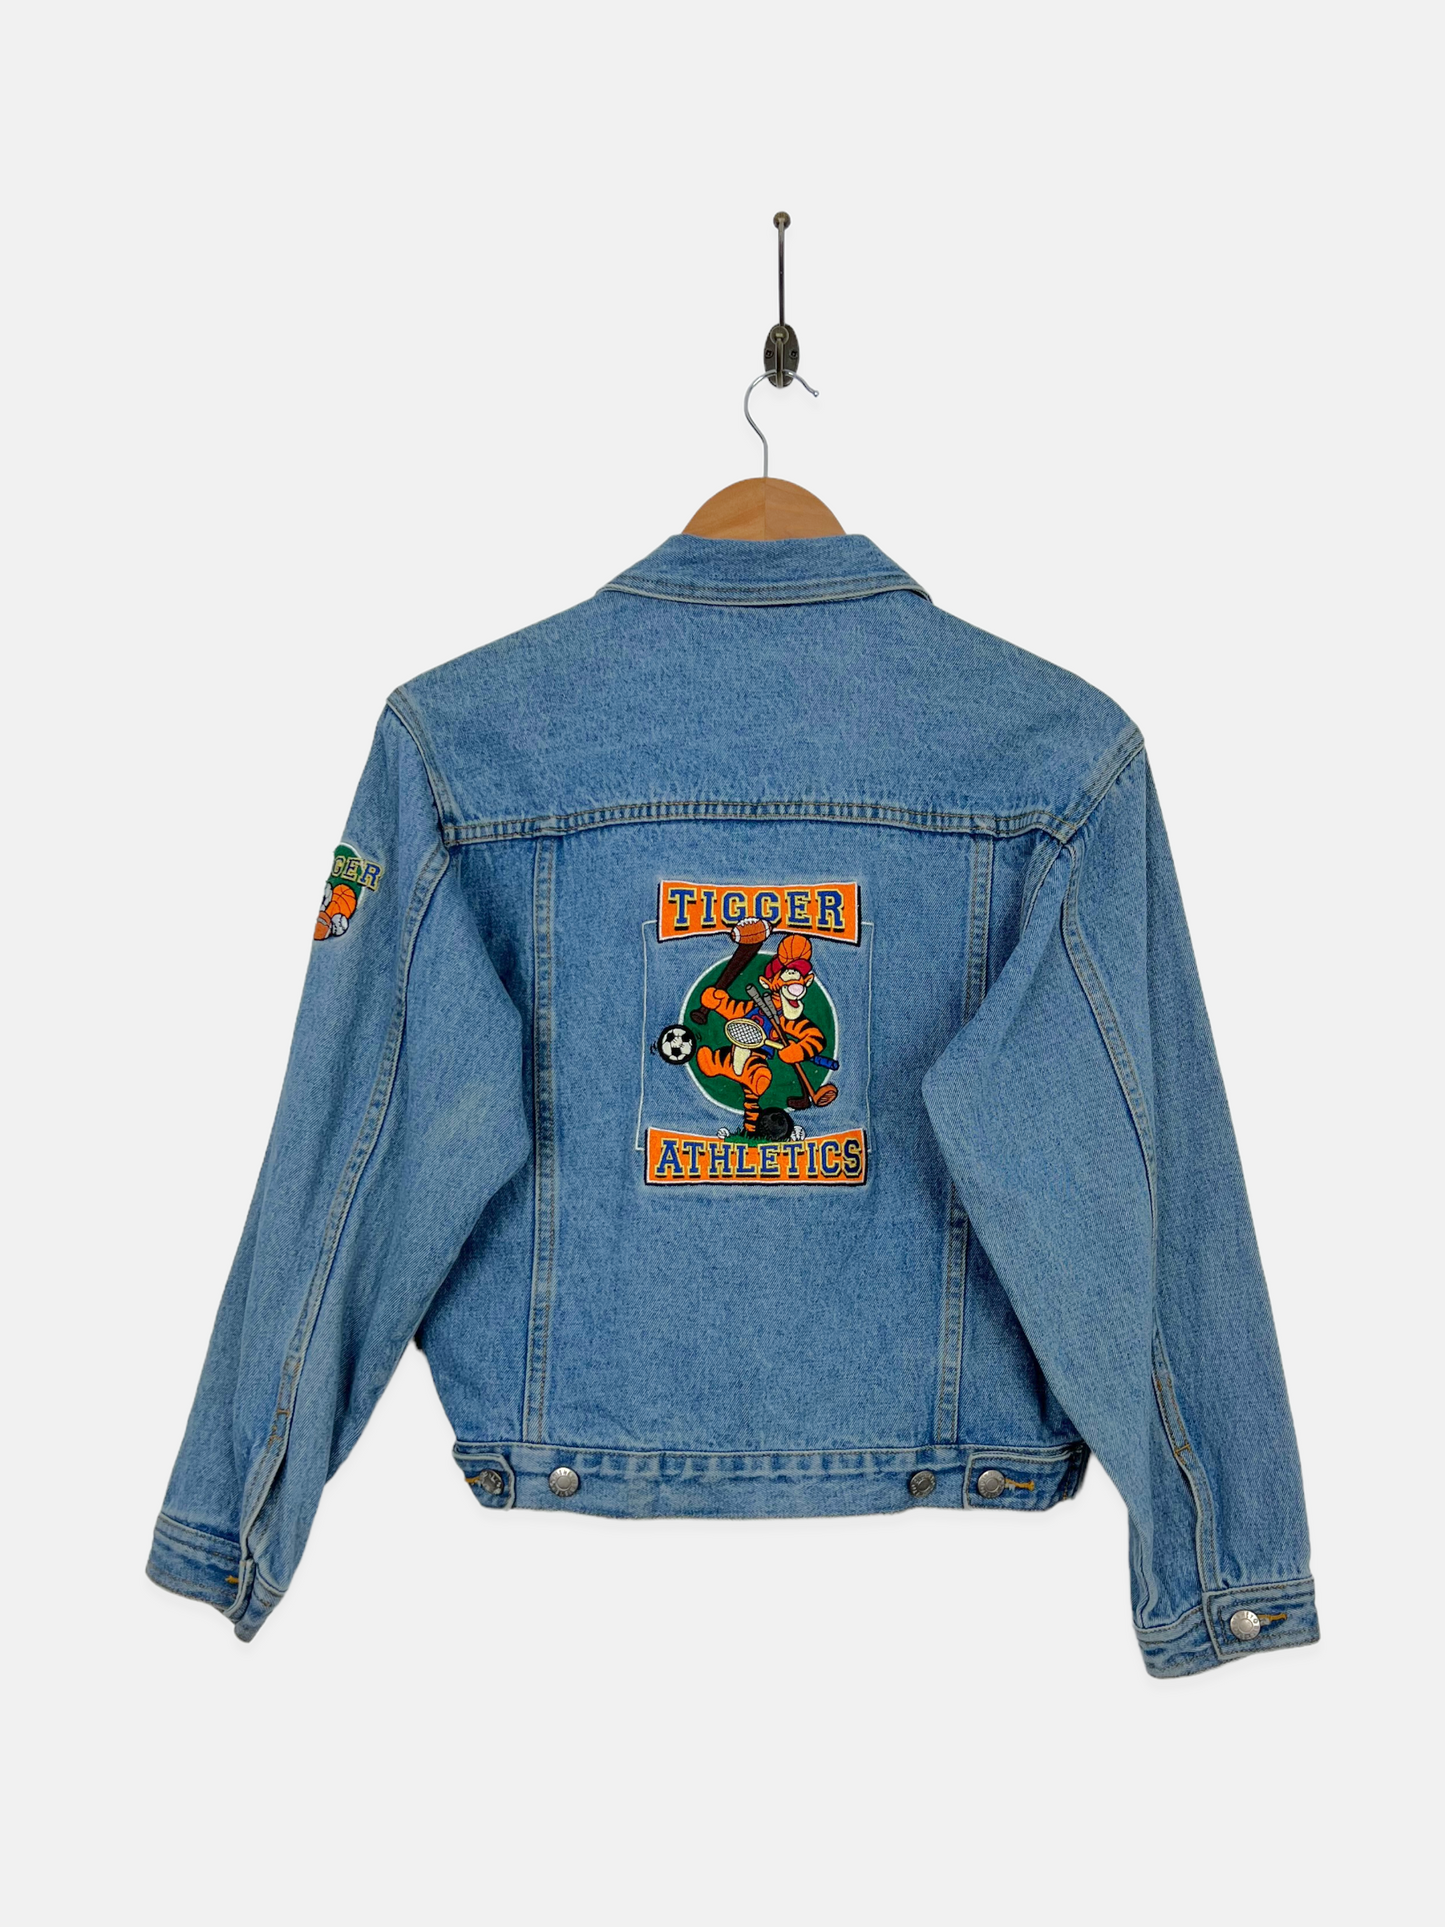 90's Disney Tigger Athletics Embroidered Vintage Denim Jacket Size 4-6